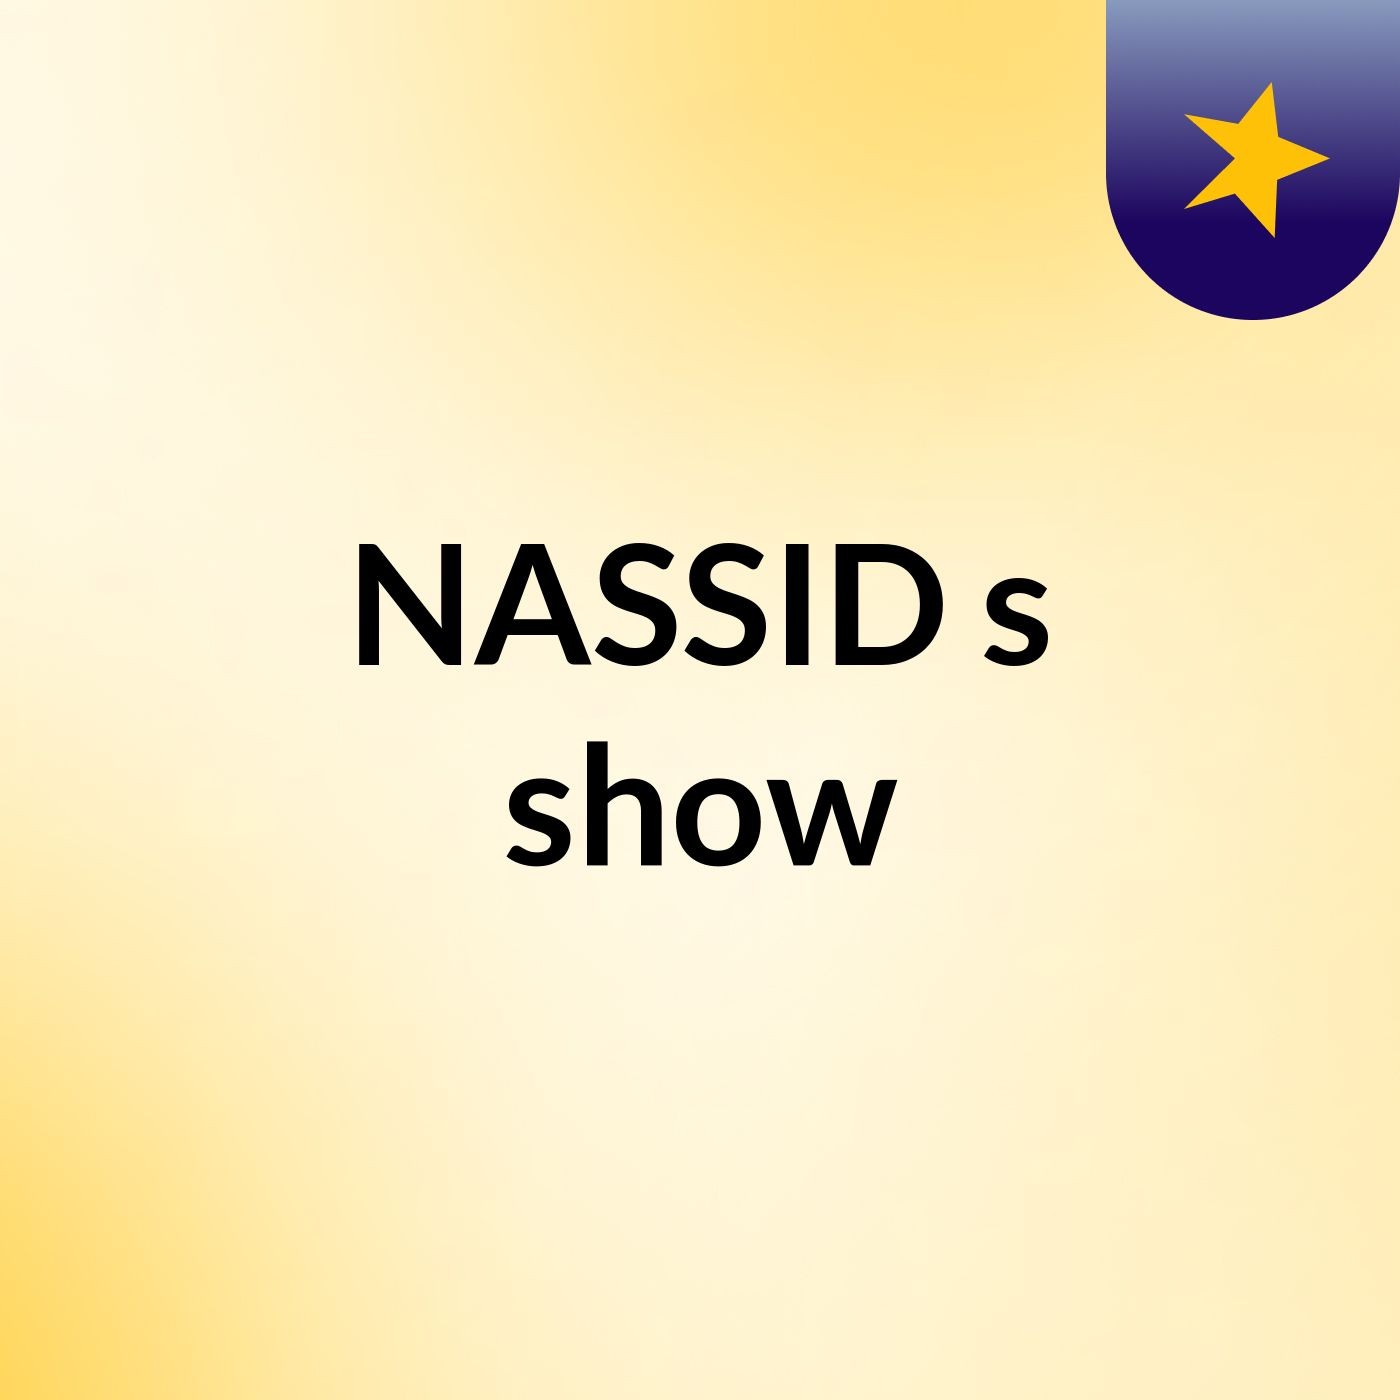 NASSID's show